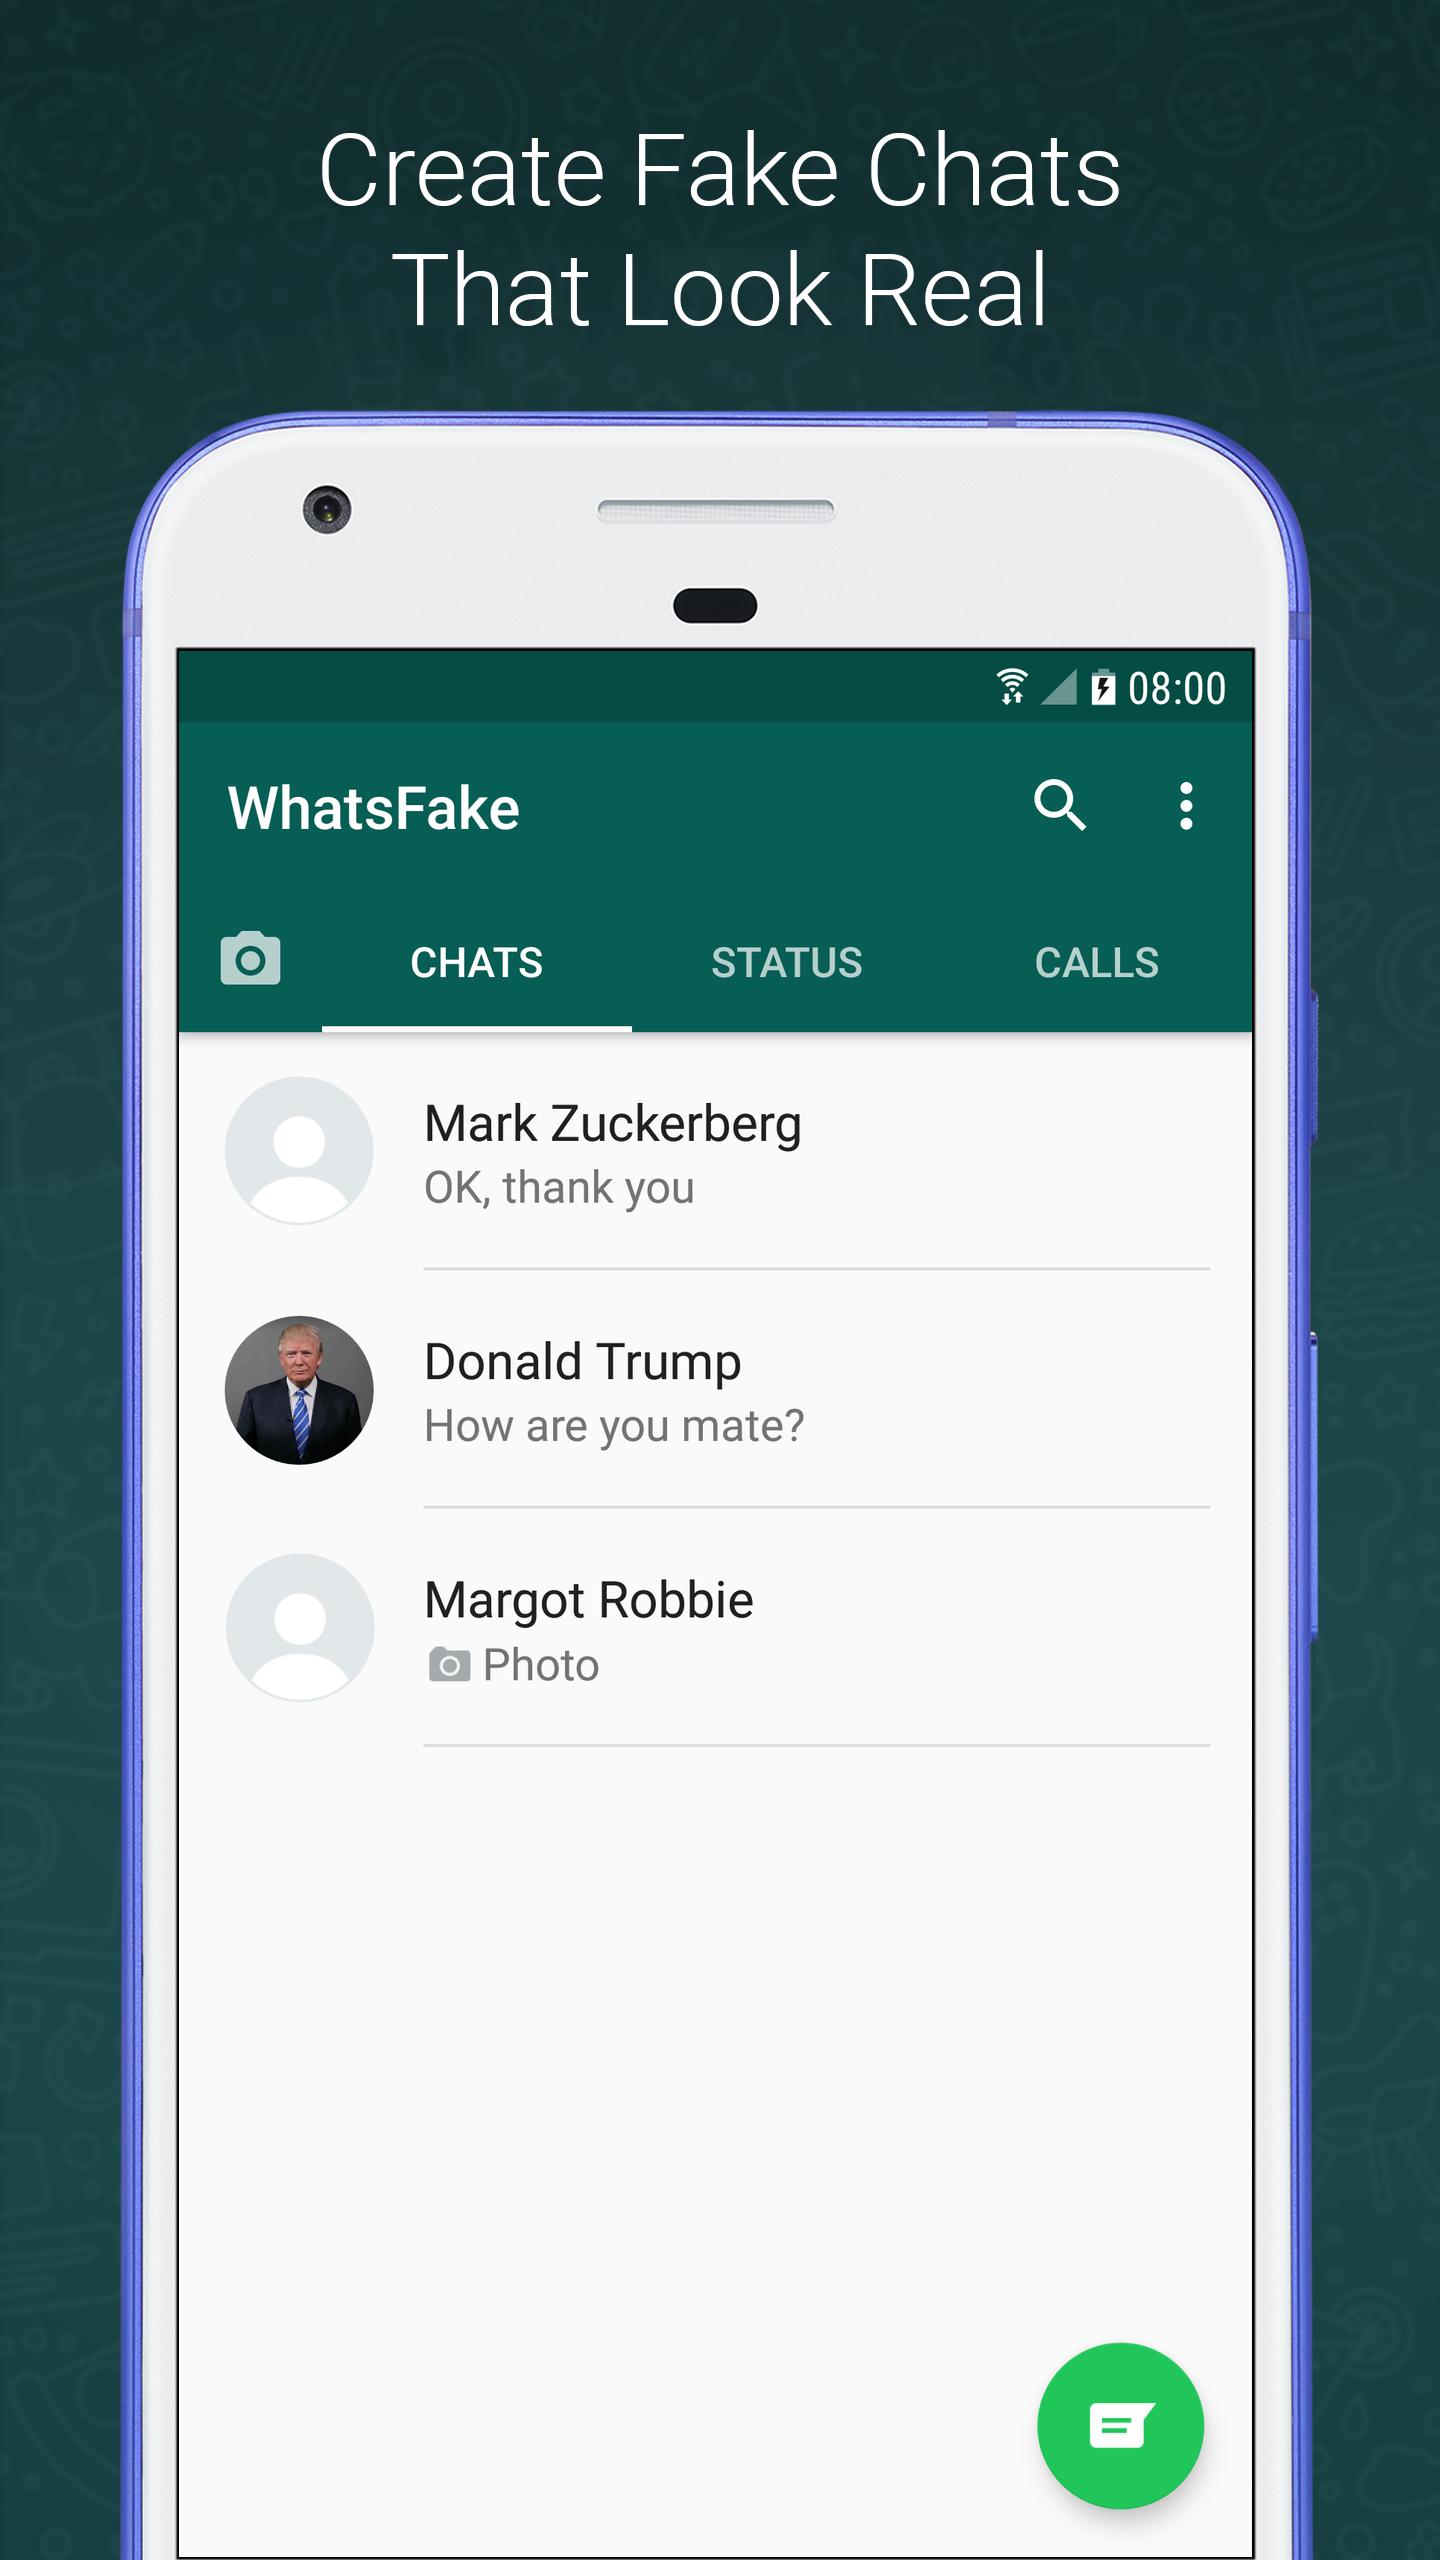 Fake whatsapp chat erstellen online